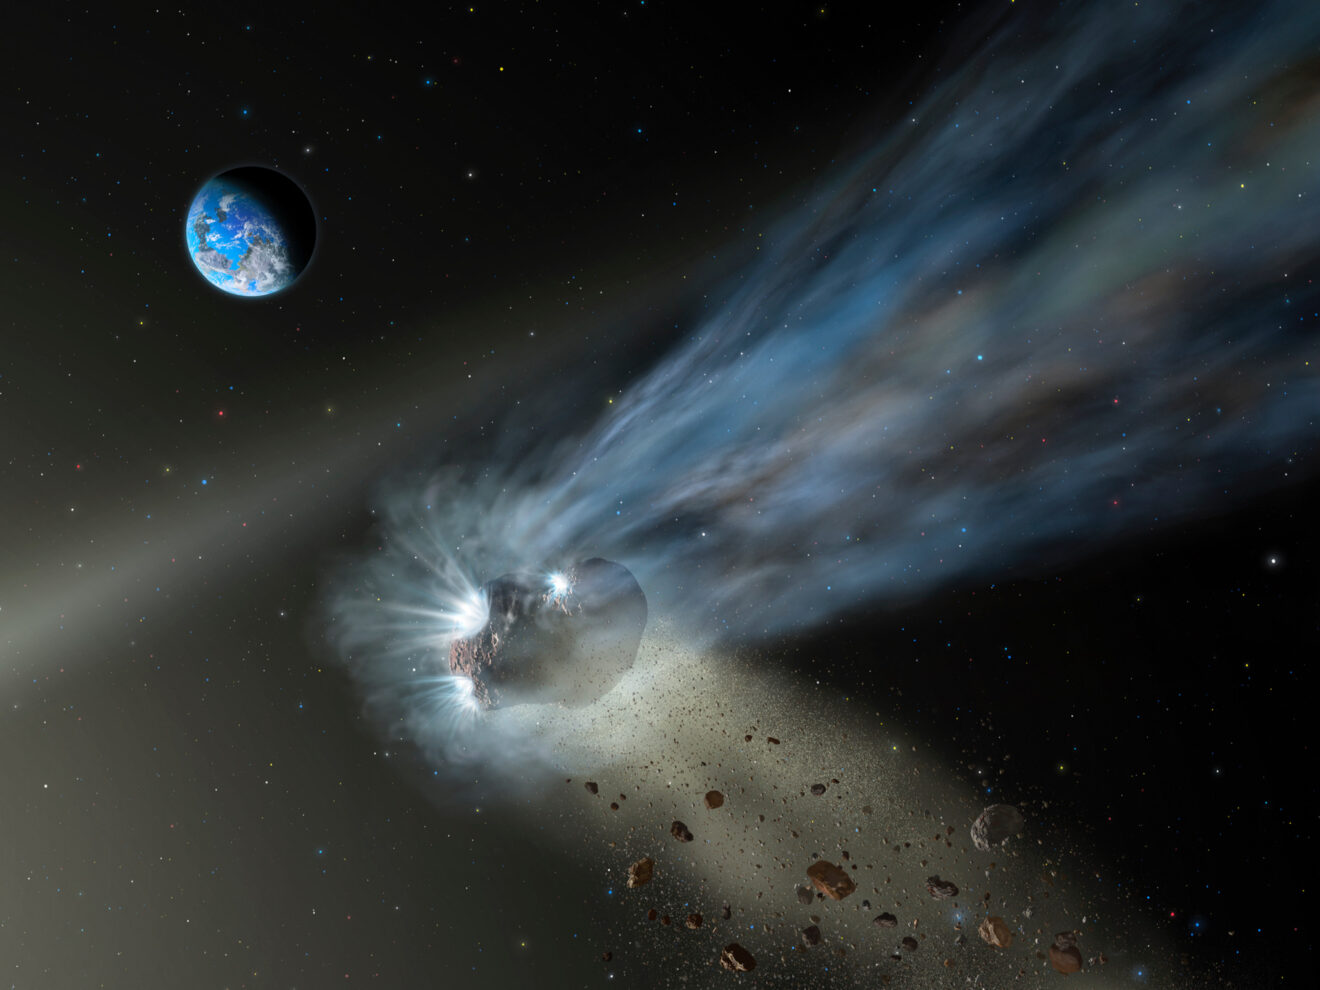 Komeet Catalina laat zien dat rotsachtige planeten koolstof krijgen van kometen